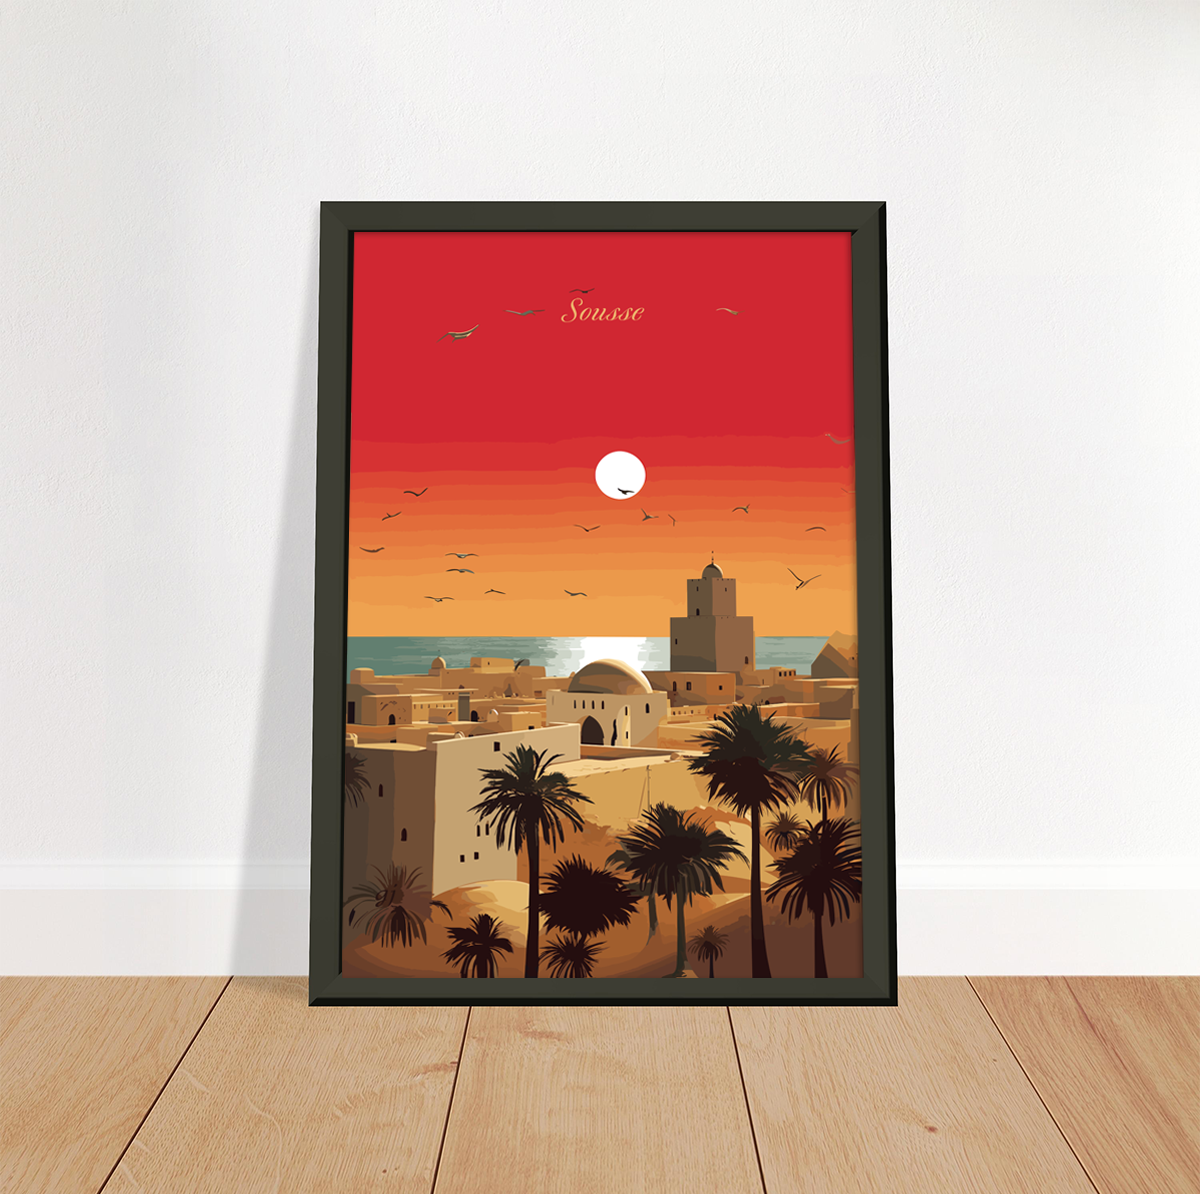 Sousse poster by bon voyage design